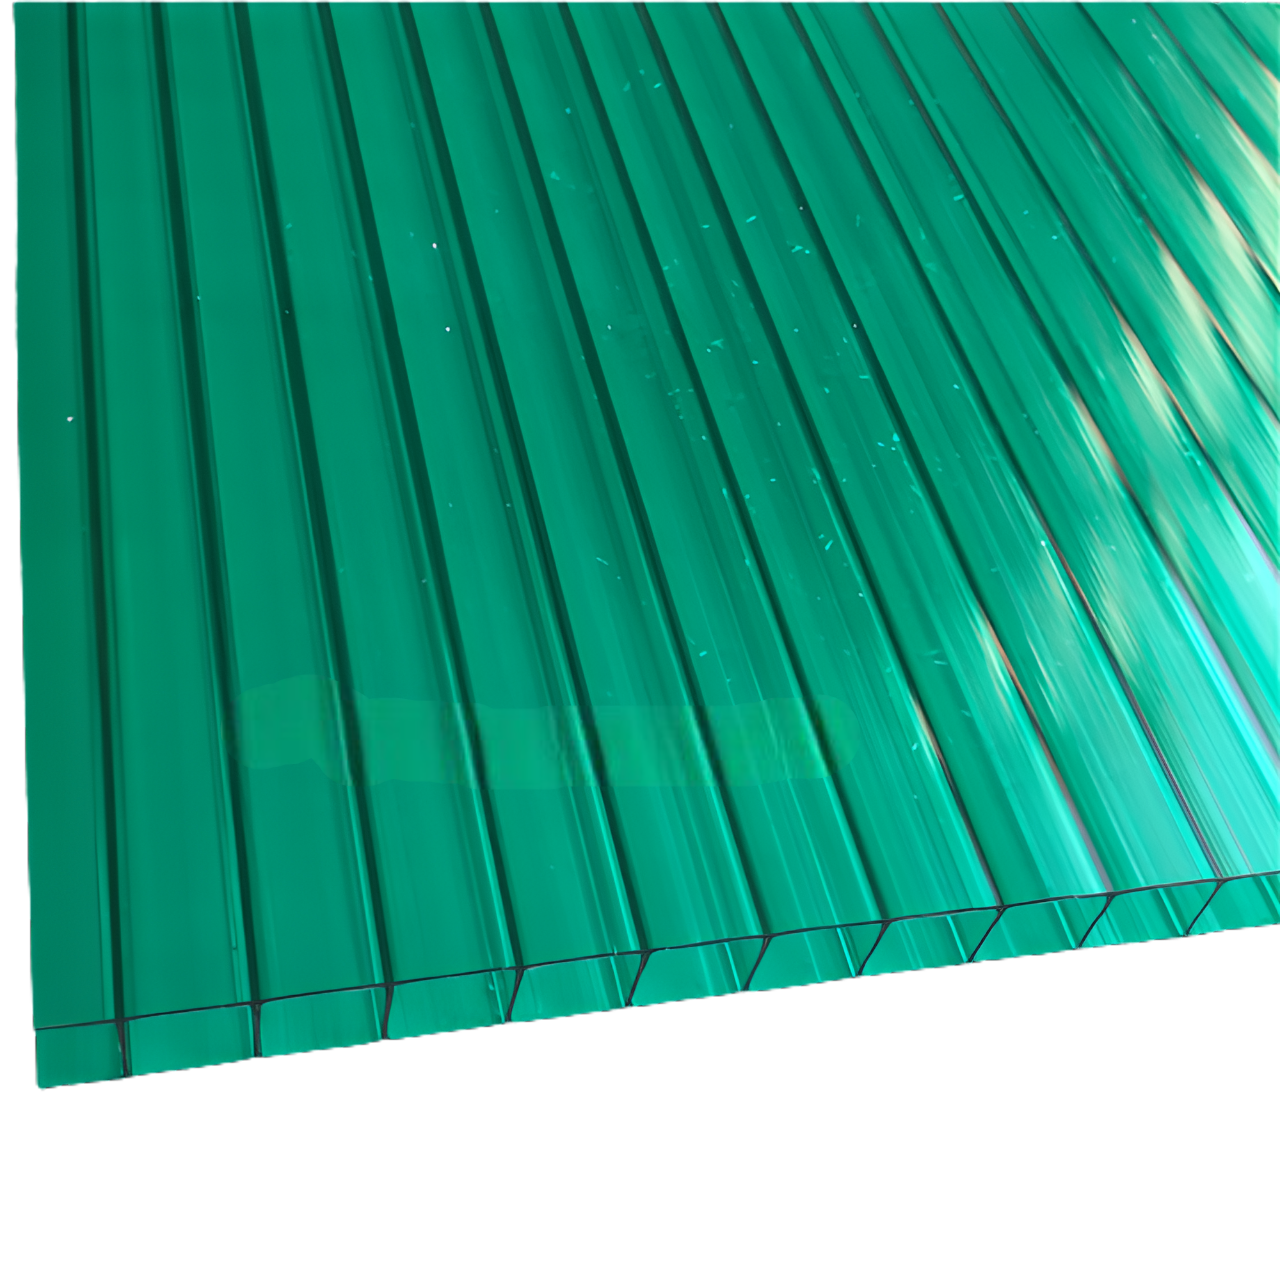 Plaque polycarbonate alvéolaire 10 mm vert - 210 x 600 cm